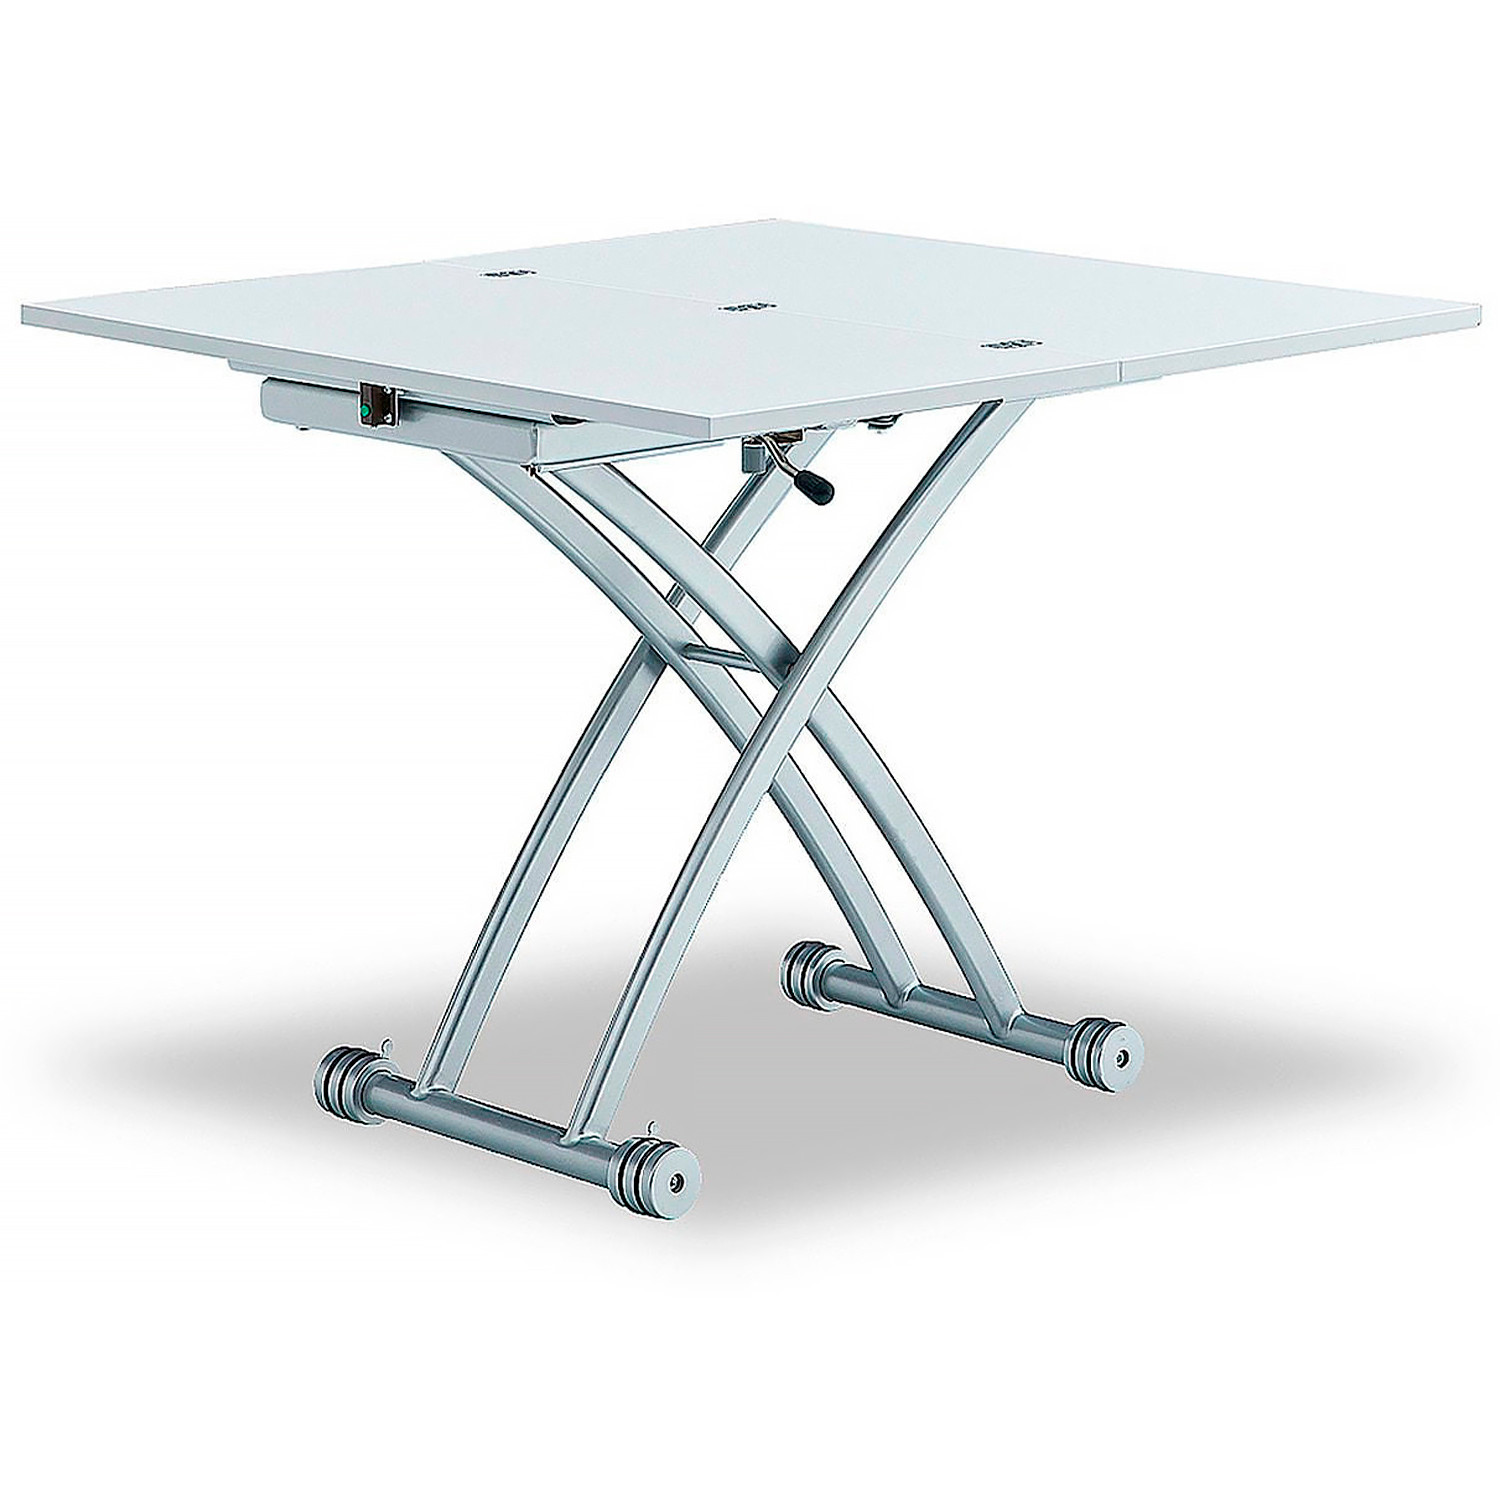 Купить стол трансформер журнально обеденный в москве. Стол трансформер ESF в2202. Стол b2242-1-c белый. Стол-трансформер Levmar Basic. Стол-трансформер Jordan, белый.